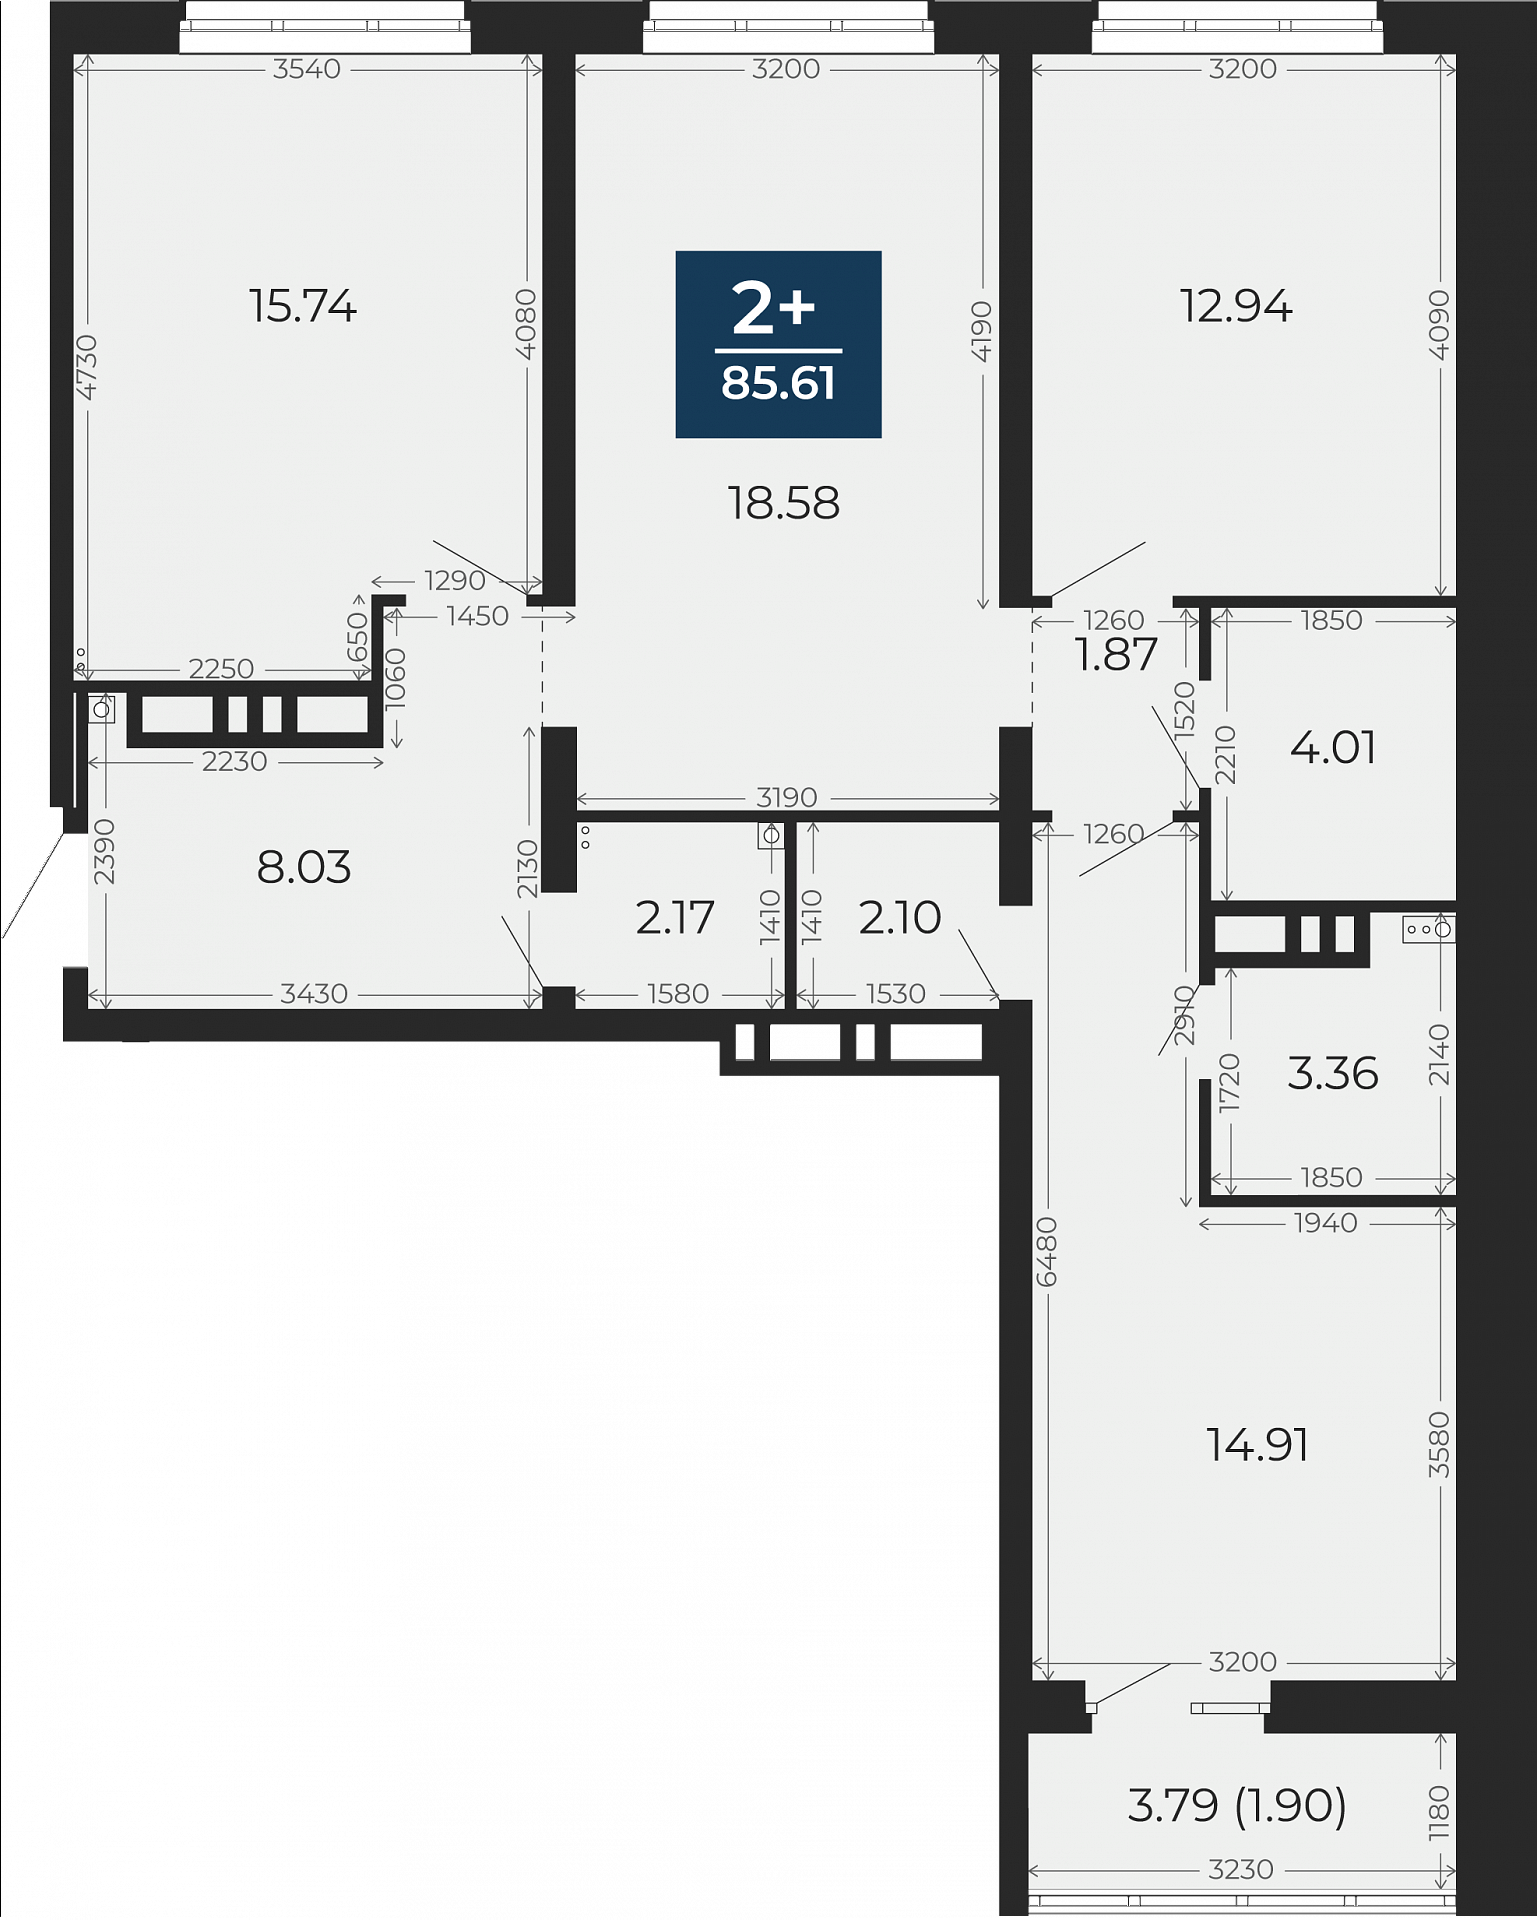 Квартира № 185, 2-комнатная, 85.61 кв. м, 8 этаж